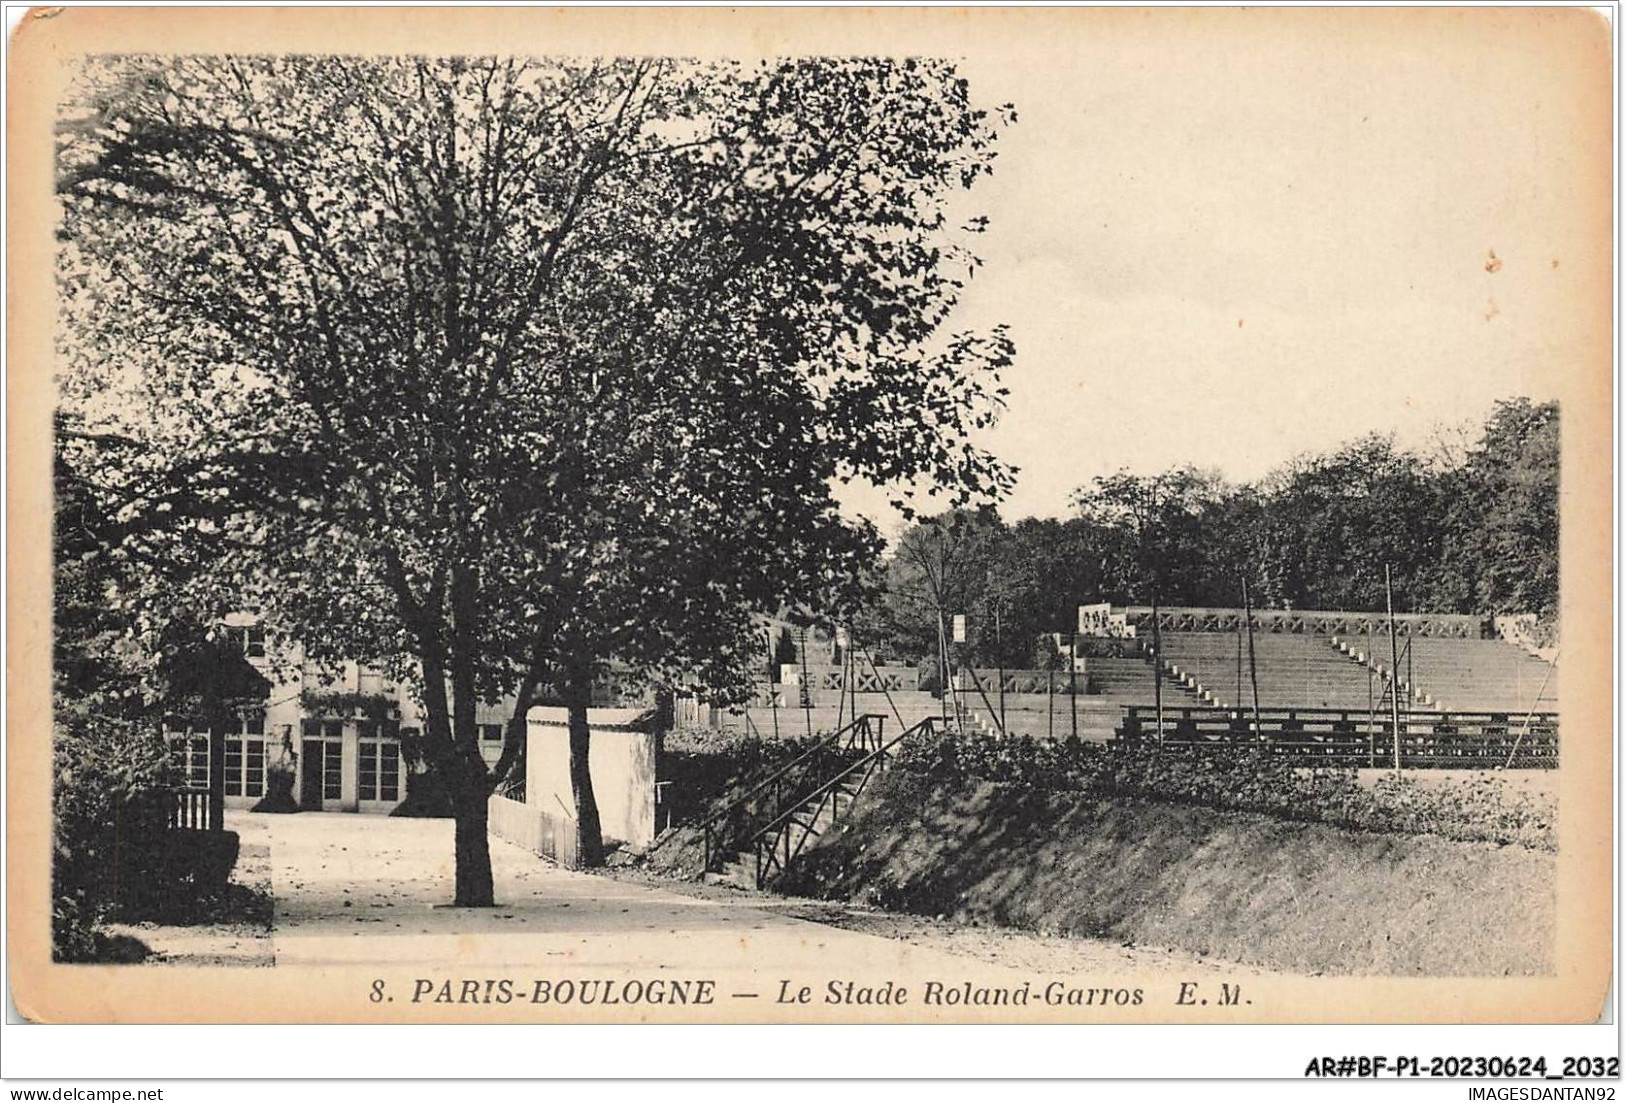 AR#BFP1-92-1018 - PARIS-BOULOGNE - Le Stade Roland-Garros - NÂ°3 TENNIS - Boulogne Billancourt